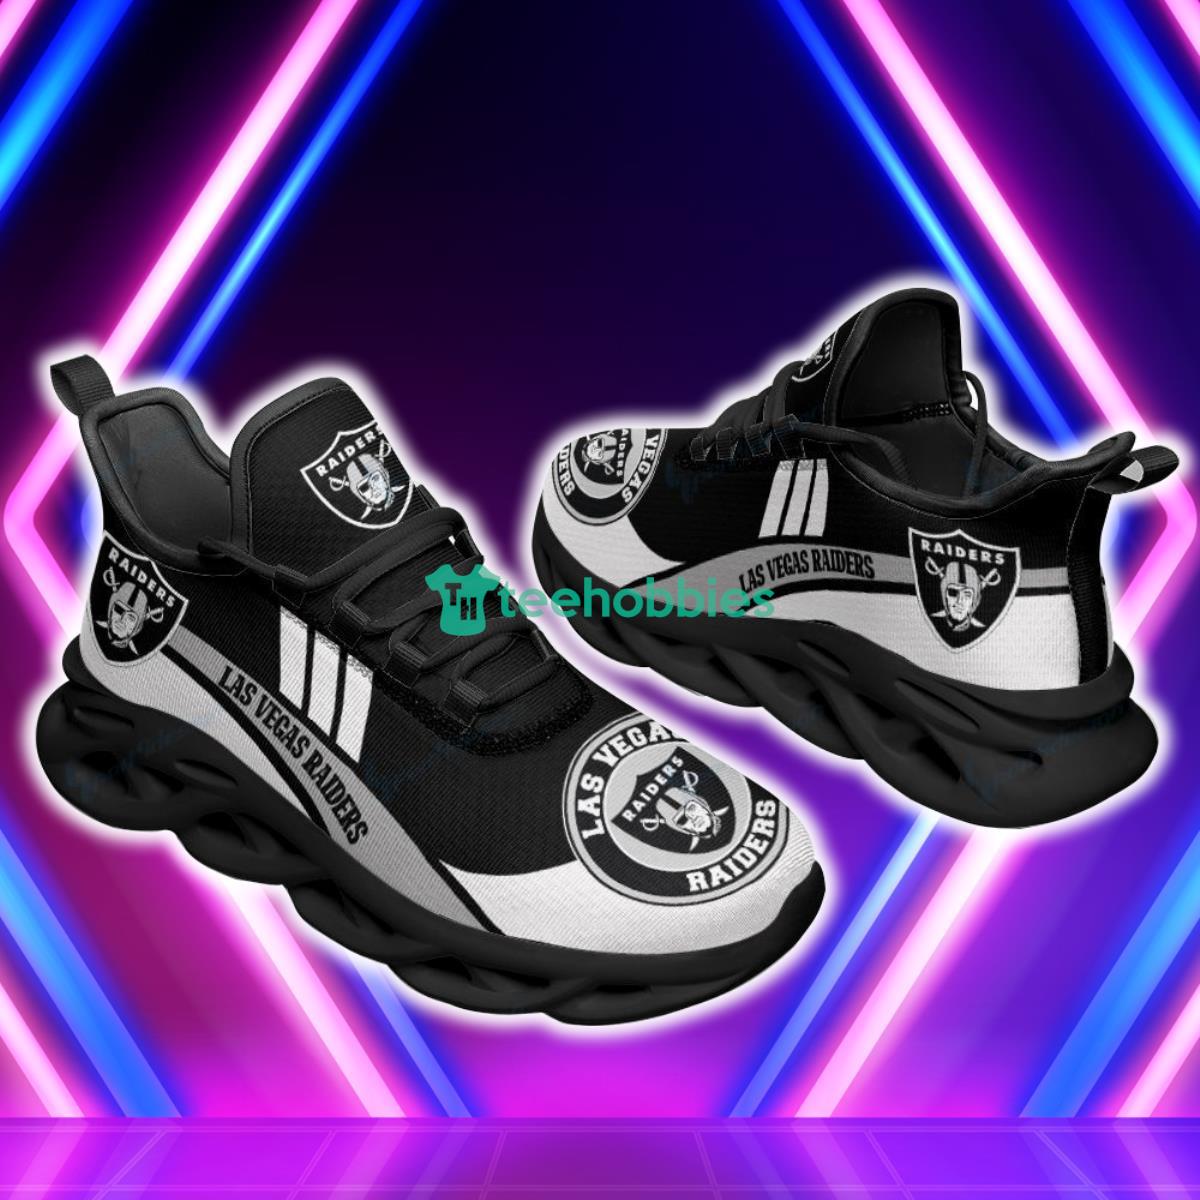 Las Vegas Raiders Skull Air Jordan 13 Sneakers Shoes